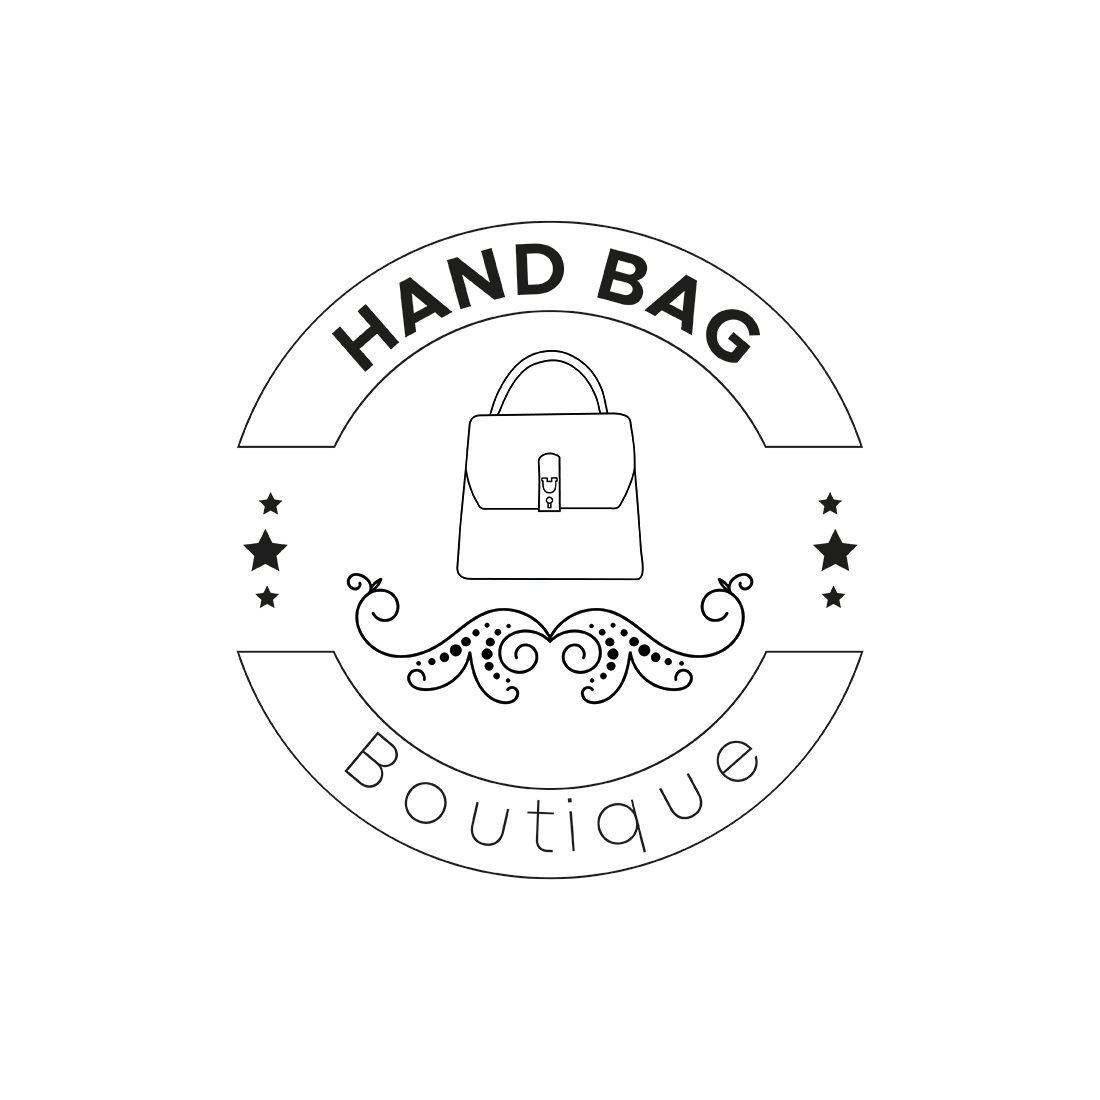 Hand Bag Boutique Logo Cover Image.